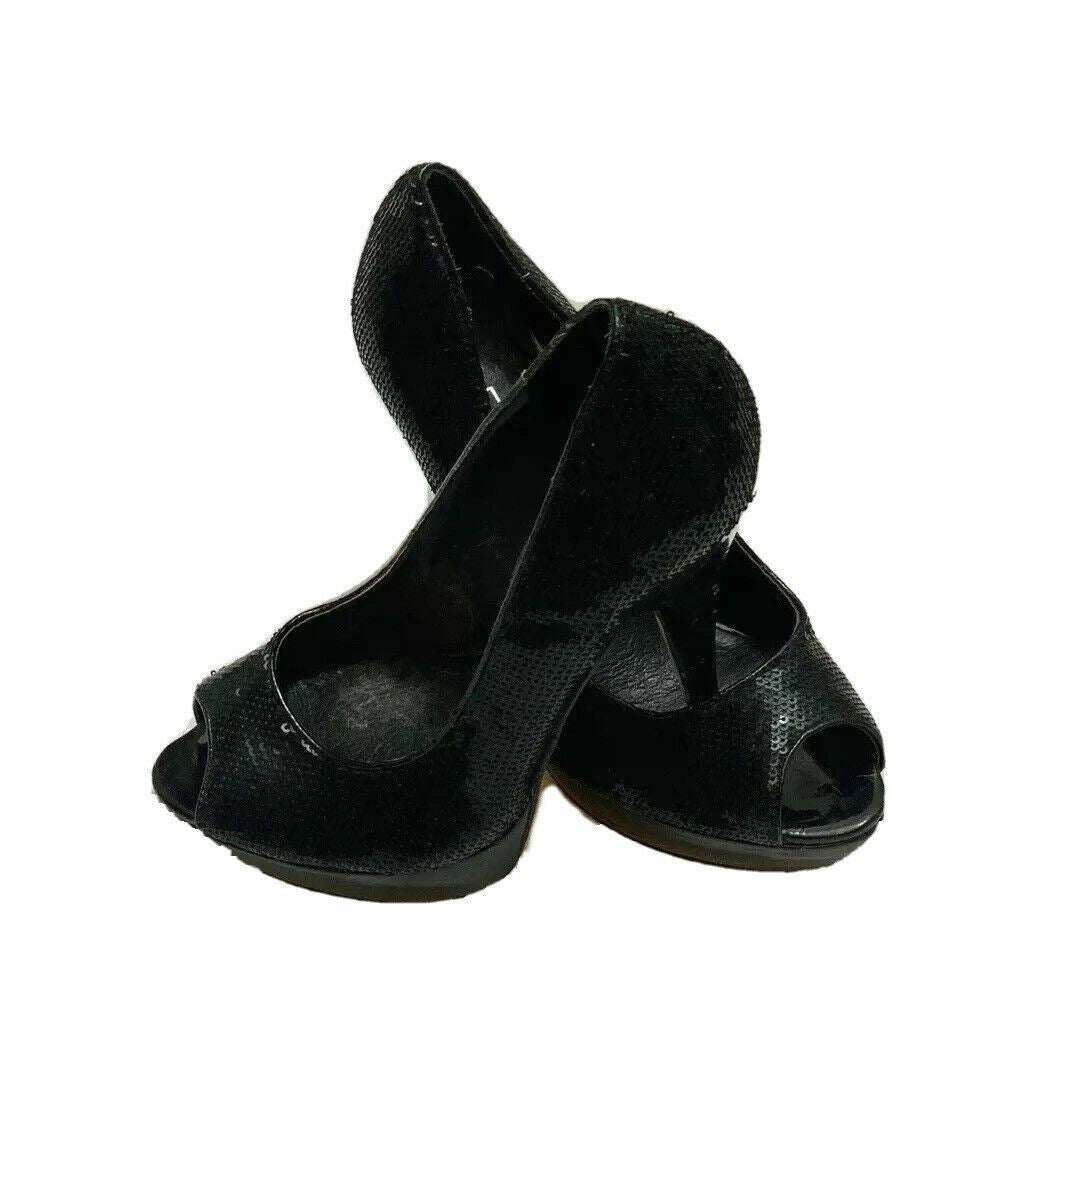 ALDO Black Sequin Stiletto Peep Toe 38/7.5 Pump Heel